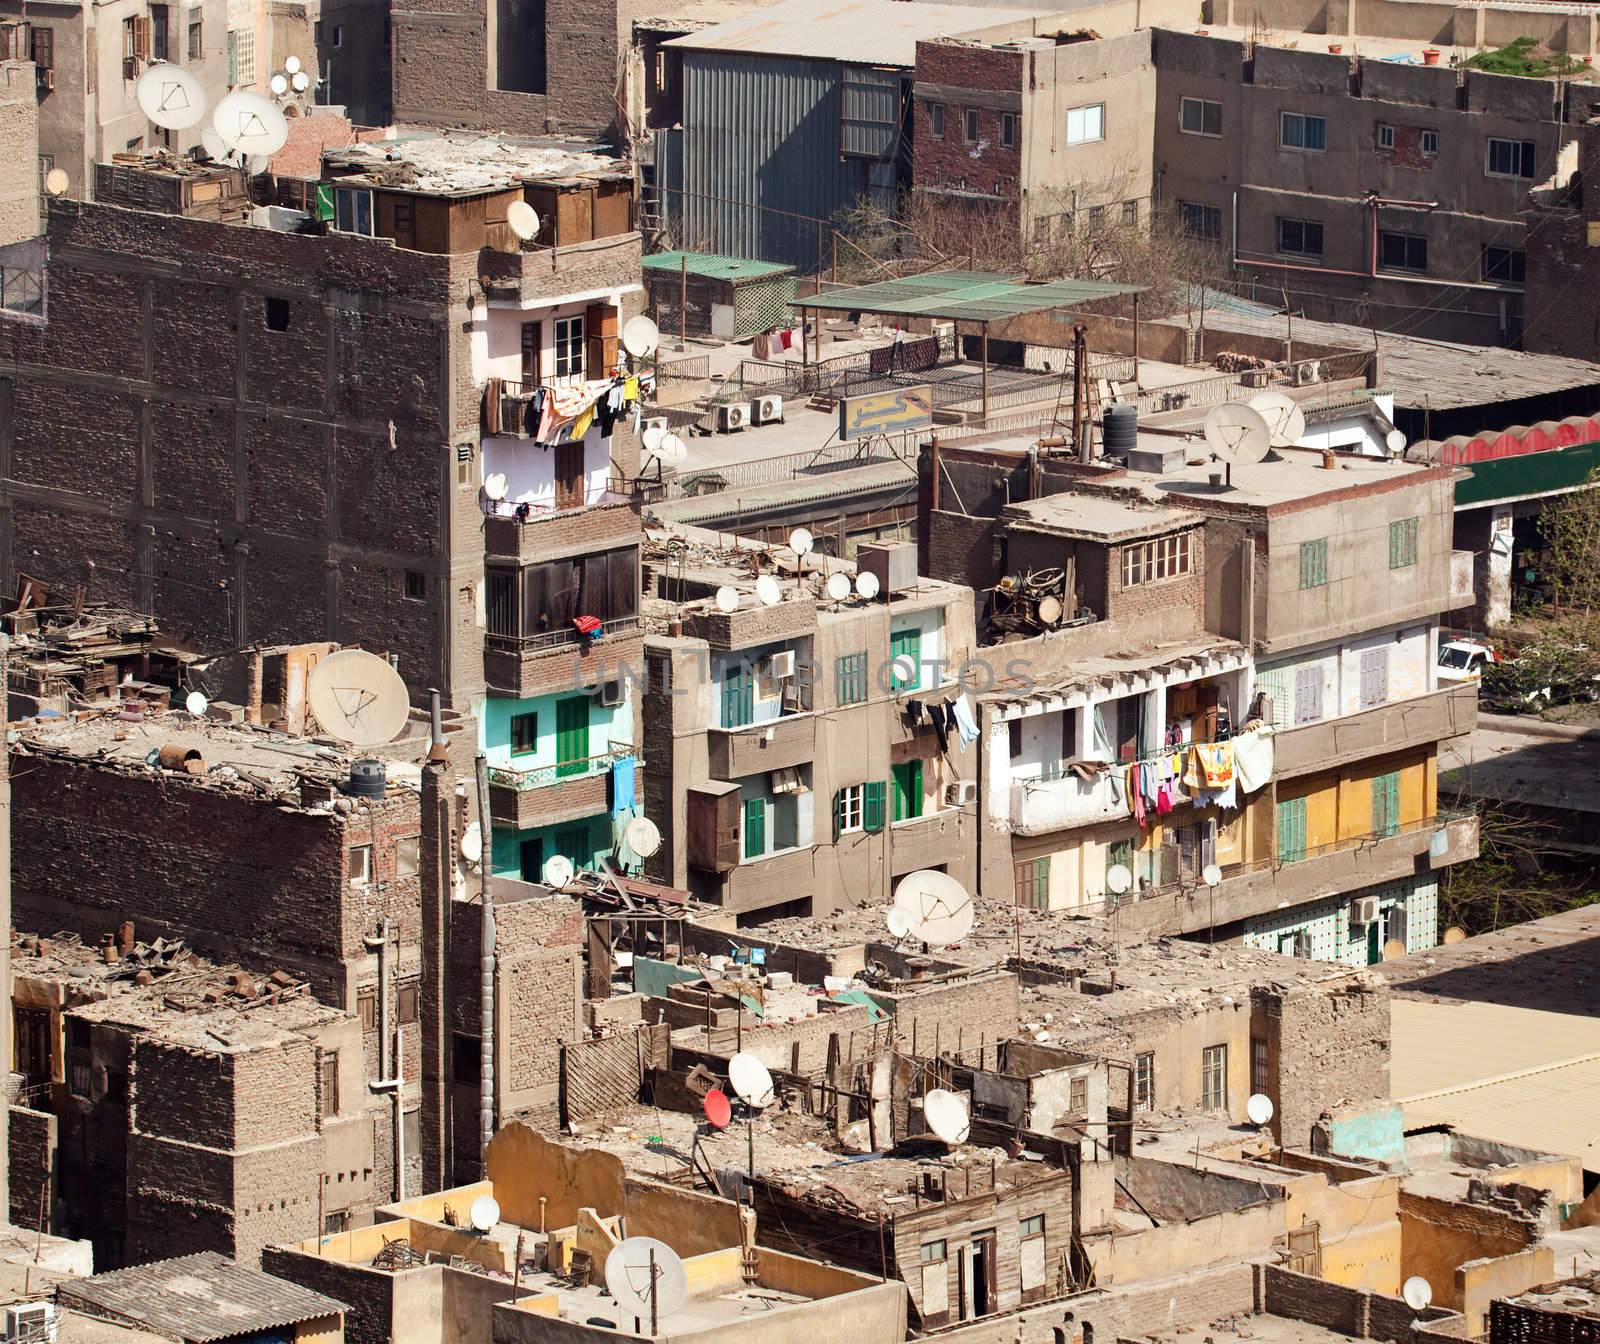 Slum dwellings in Cairo Egypt by steheap